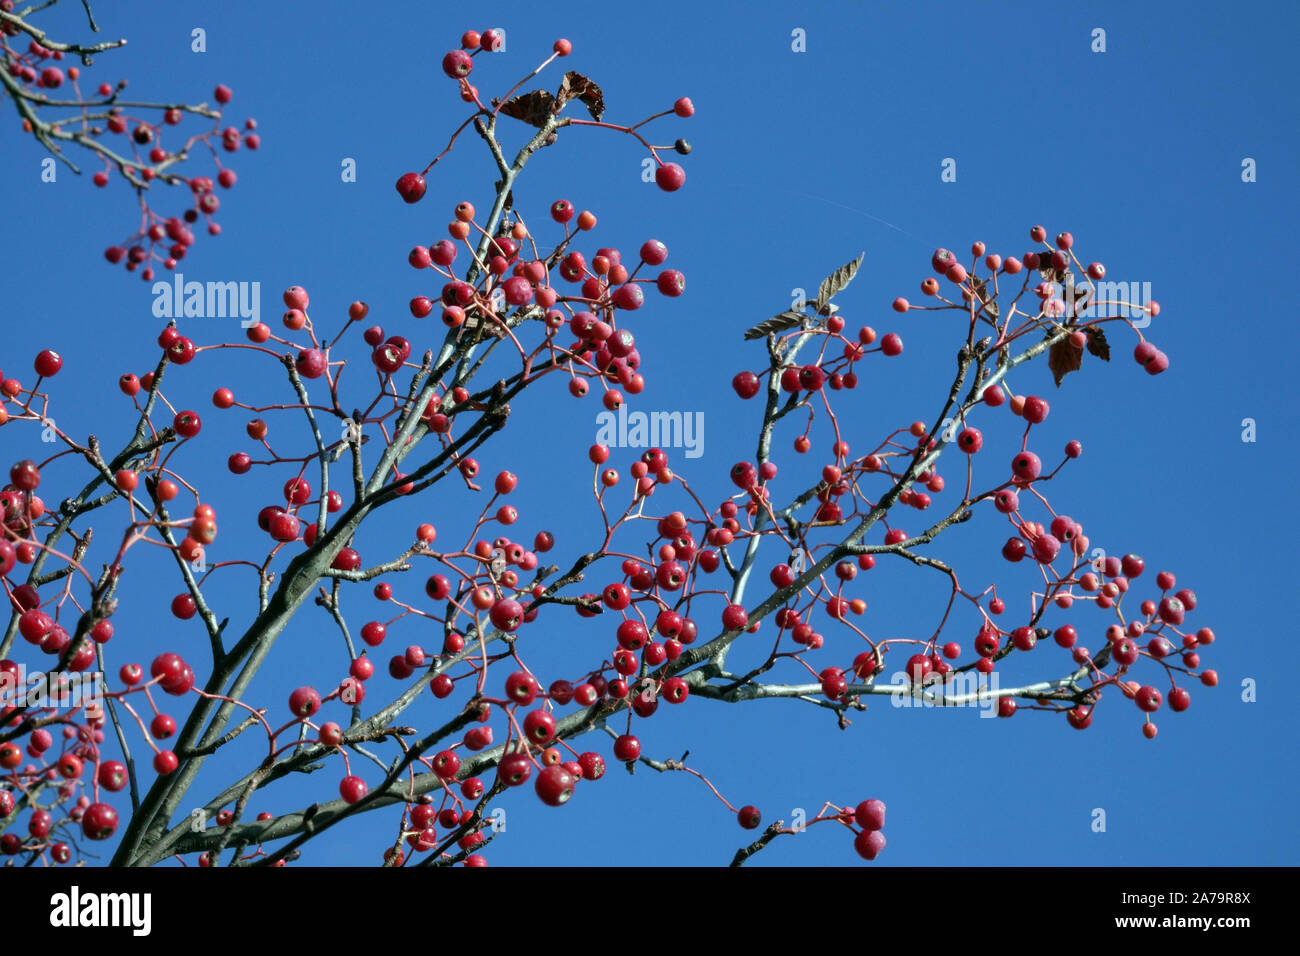 Sorbus zahlbruckneri, red berries against blue sky Stock Photo